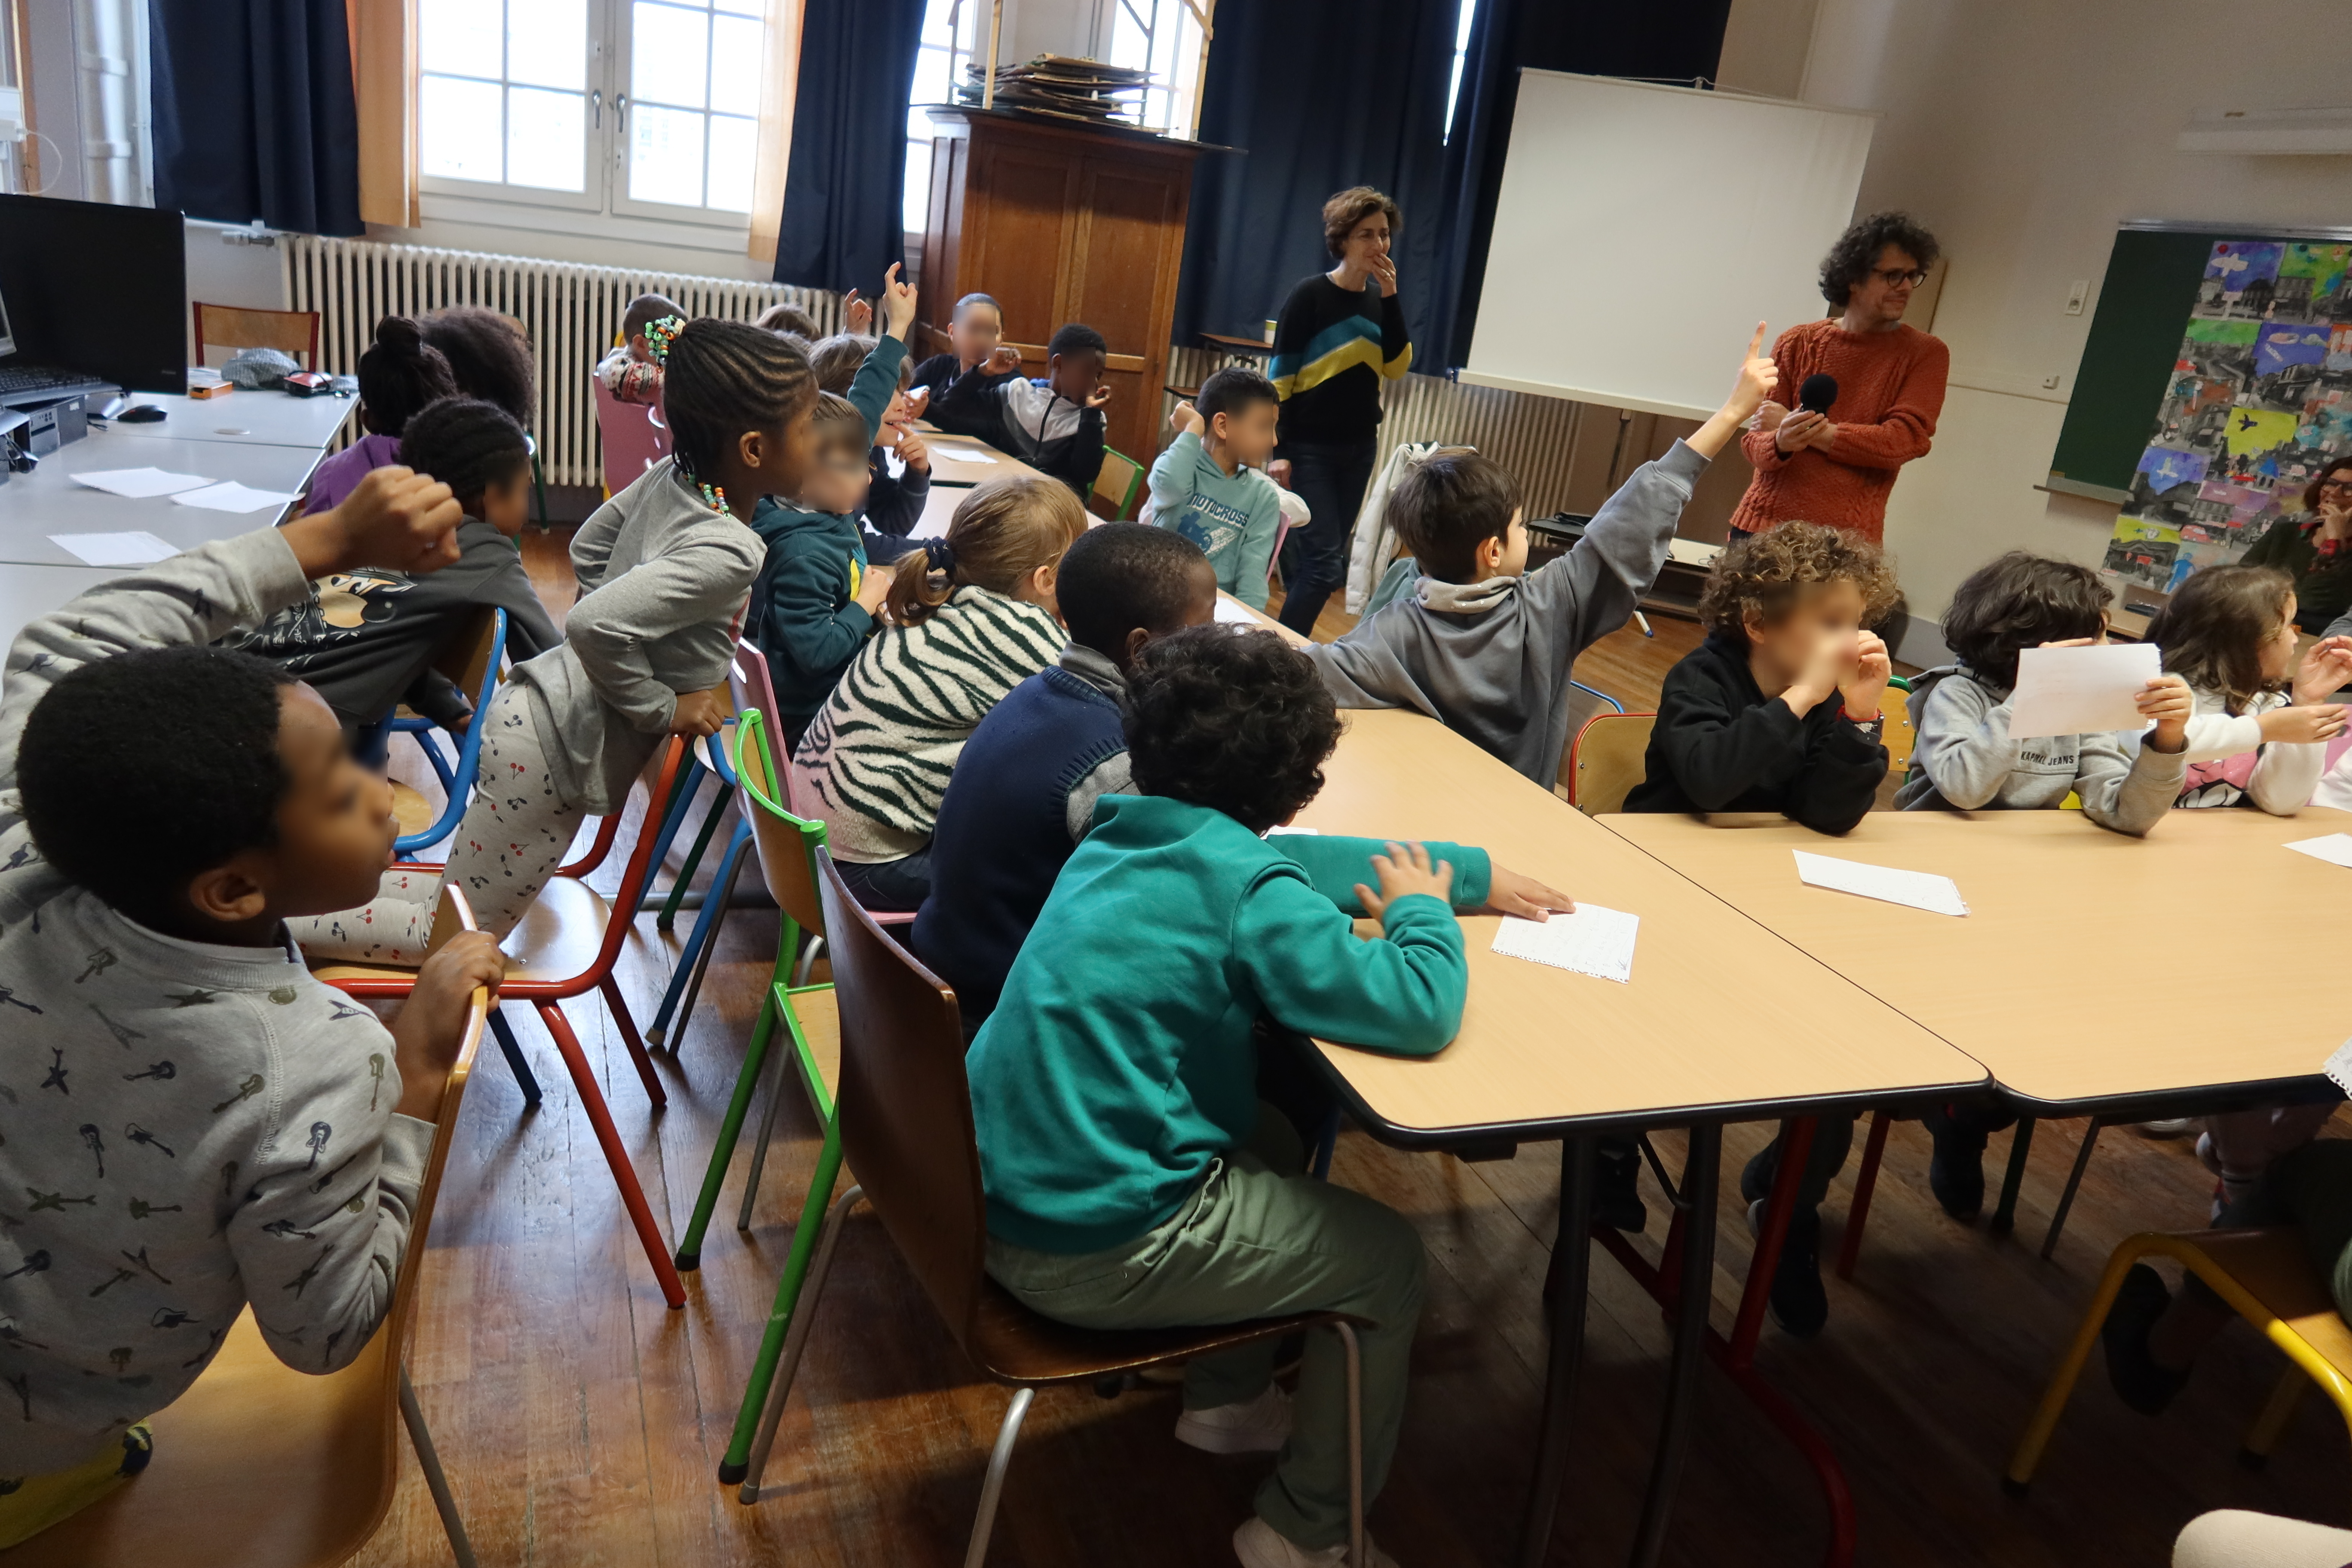 Les enfants assis autour d'une table lèvent le doigt pour pouvoir lire le texte écrit durant l'atelier à leurs camarades.